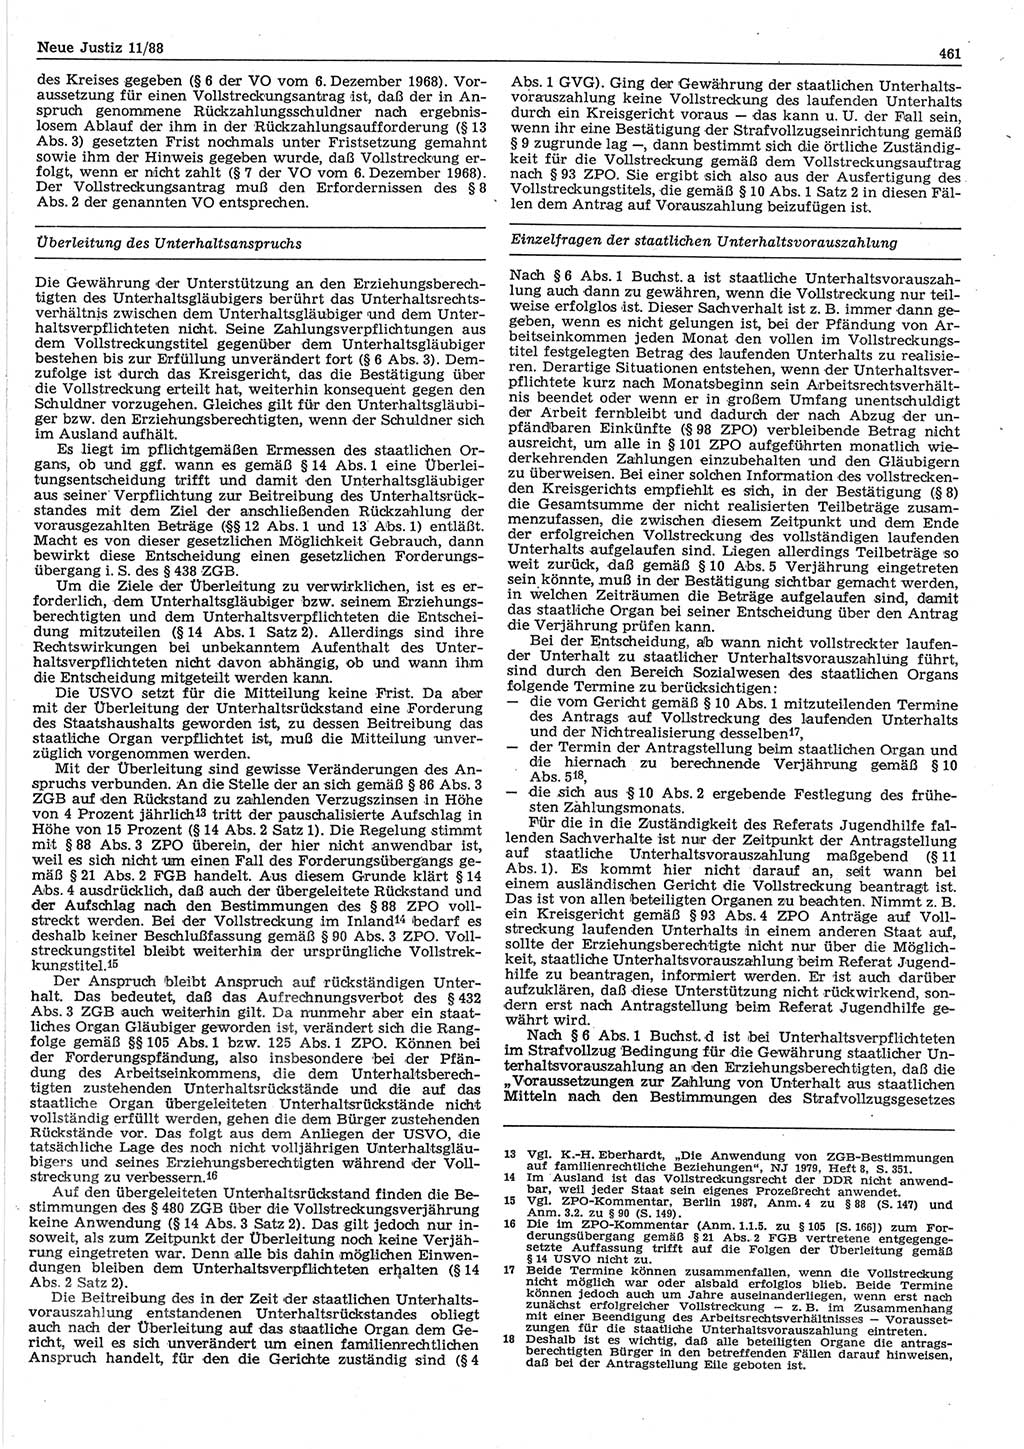 Neue Justiz (NJ), Zeitschrift für sozialistisches Recht und Gesetzlichkeit [Deutsche Demokratische Republik (DDR)], 42. Jahrgang 1988, Seite 461 (NJ DDR 1988, S. 461)